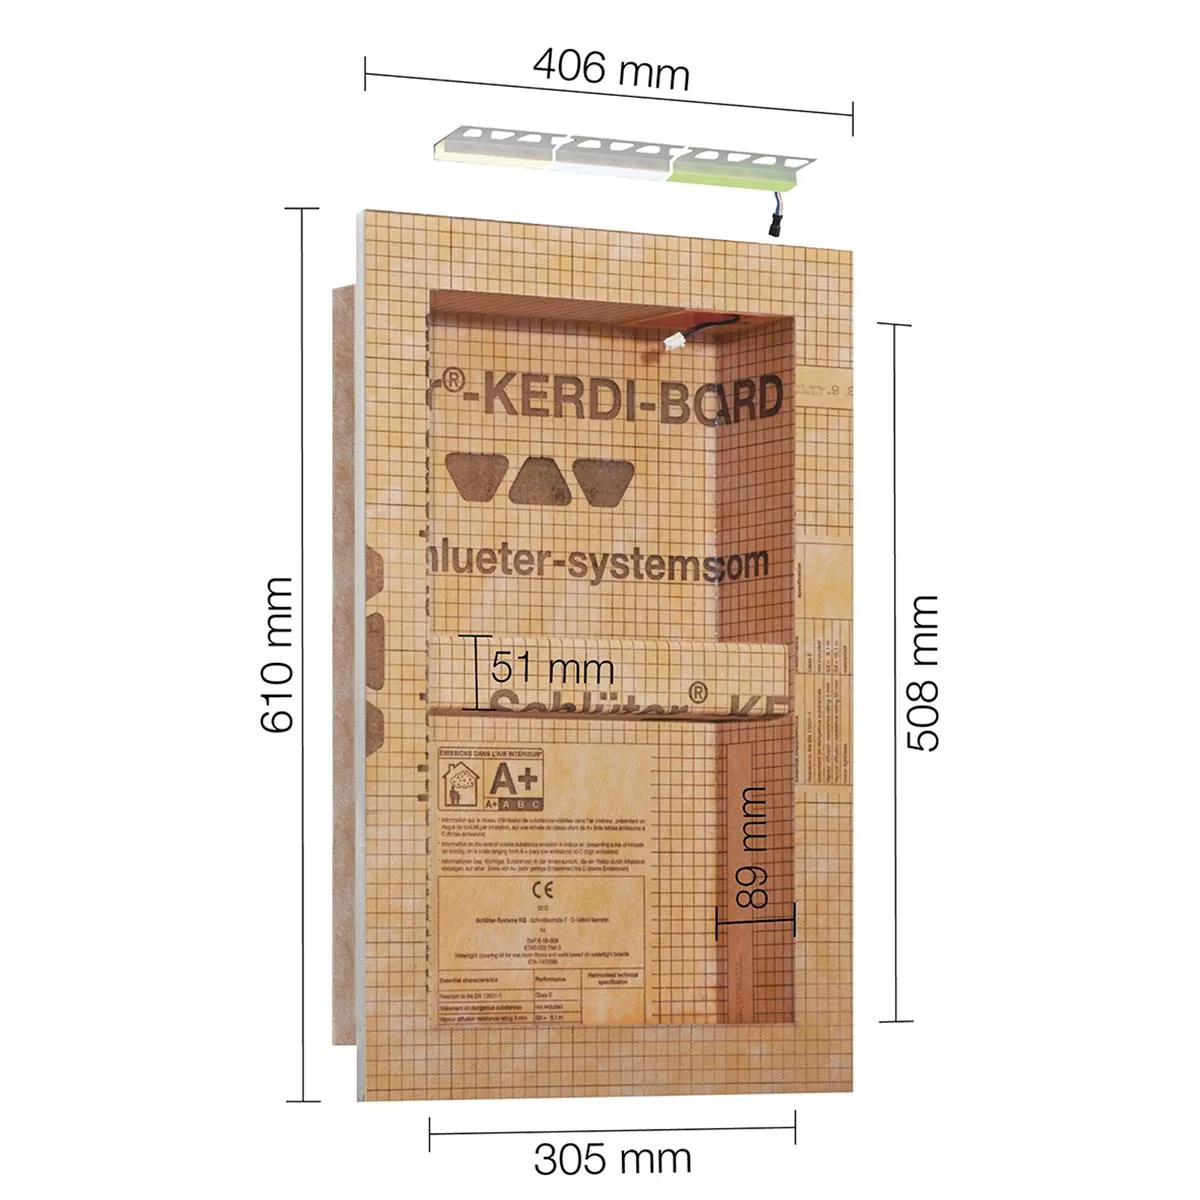 Schlüter Kerdi Board NLT juego de nicho iluminación LED blanco neutro 30,5x50,8x0,89 cm